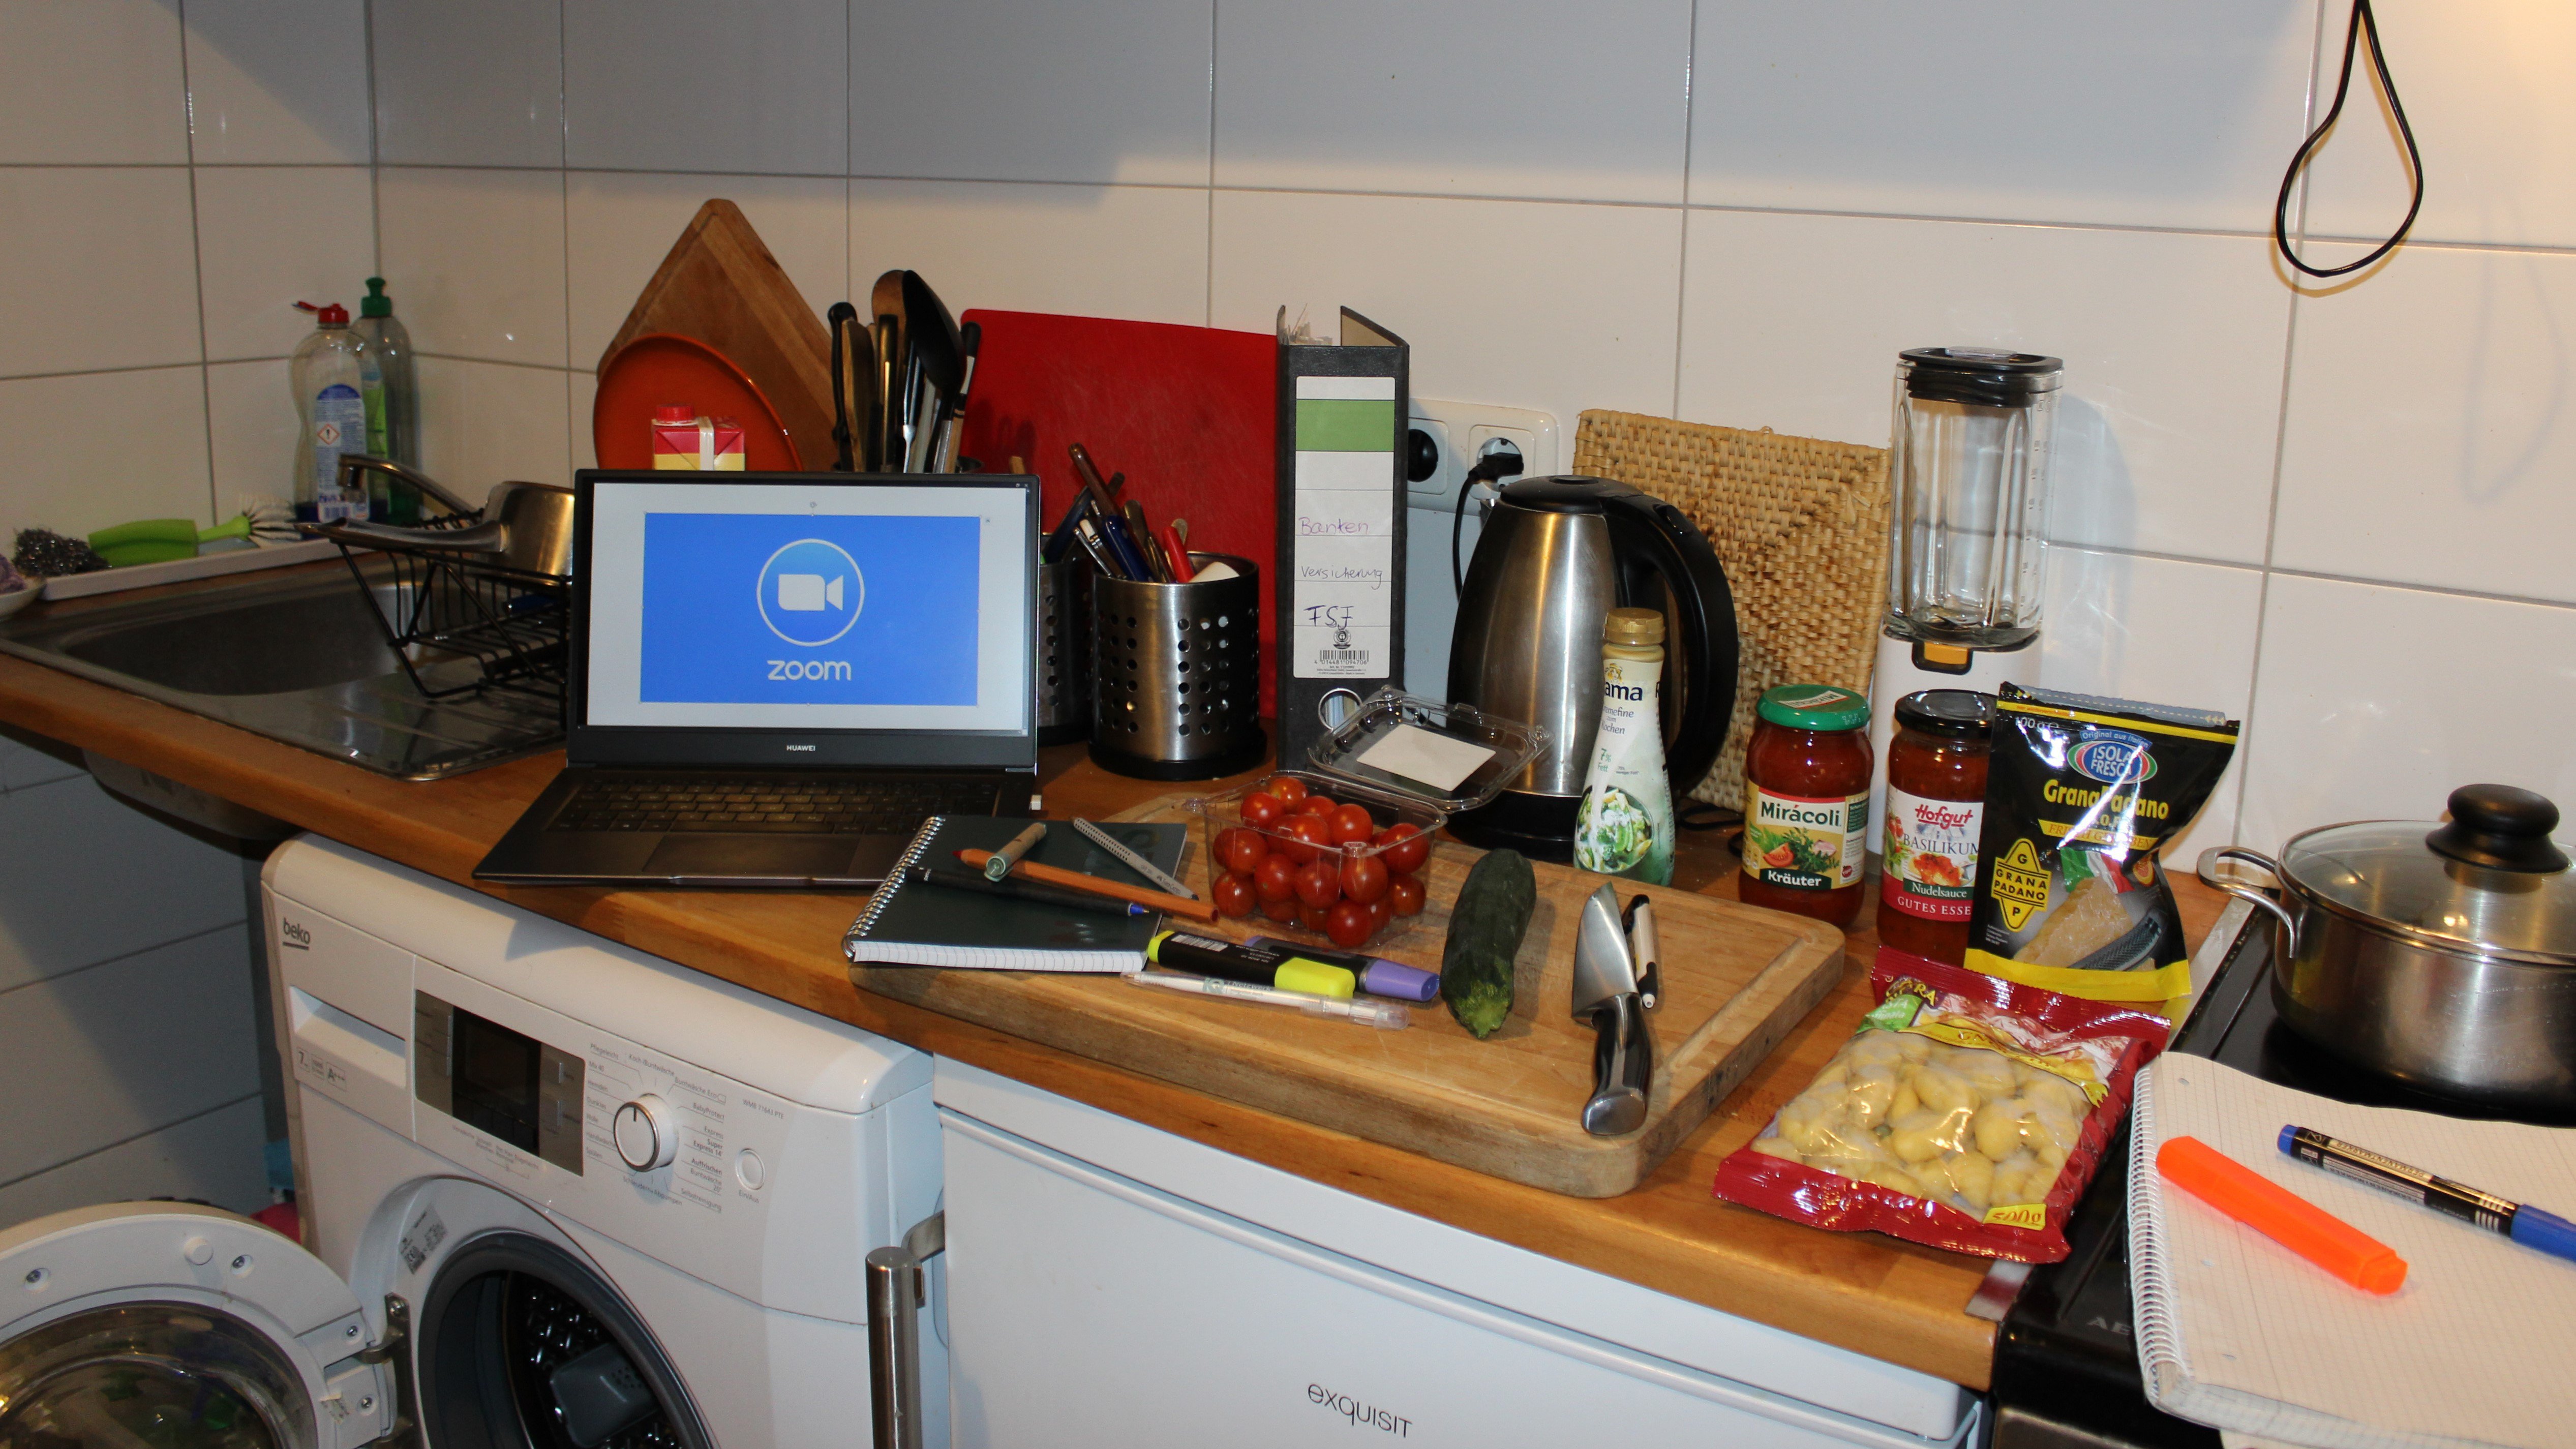 Laptop in der Küche auf der Arbeitsfläche, auf dem Display ist der Videokonferenz-Dienst Zoom geöffnet, auf und neben dem Schneidebrett liegen Lern- und Kochutensilien